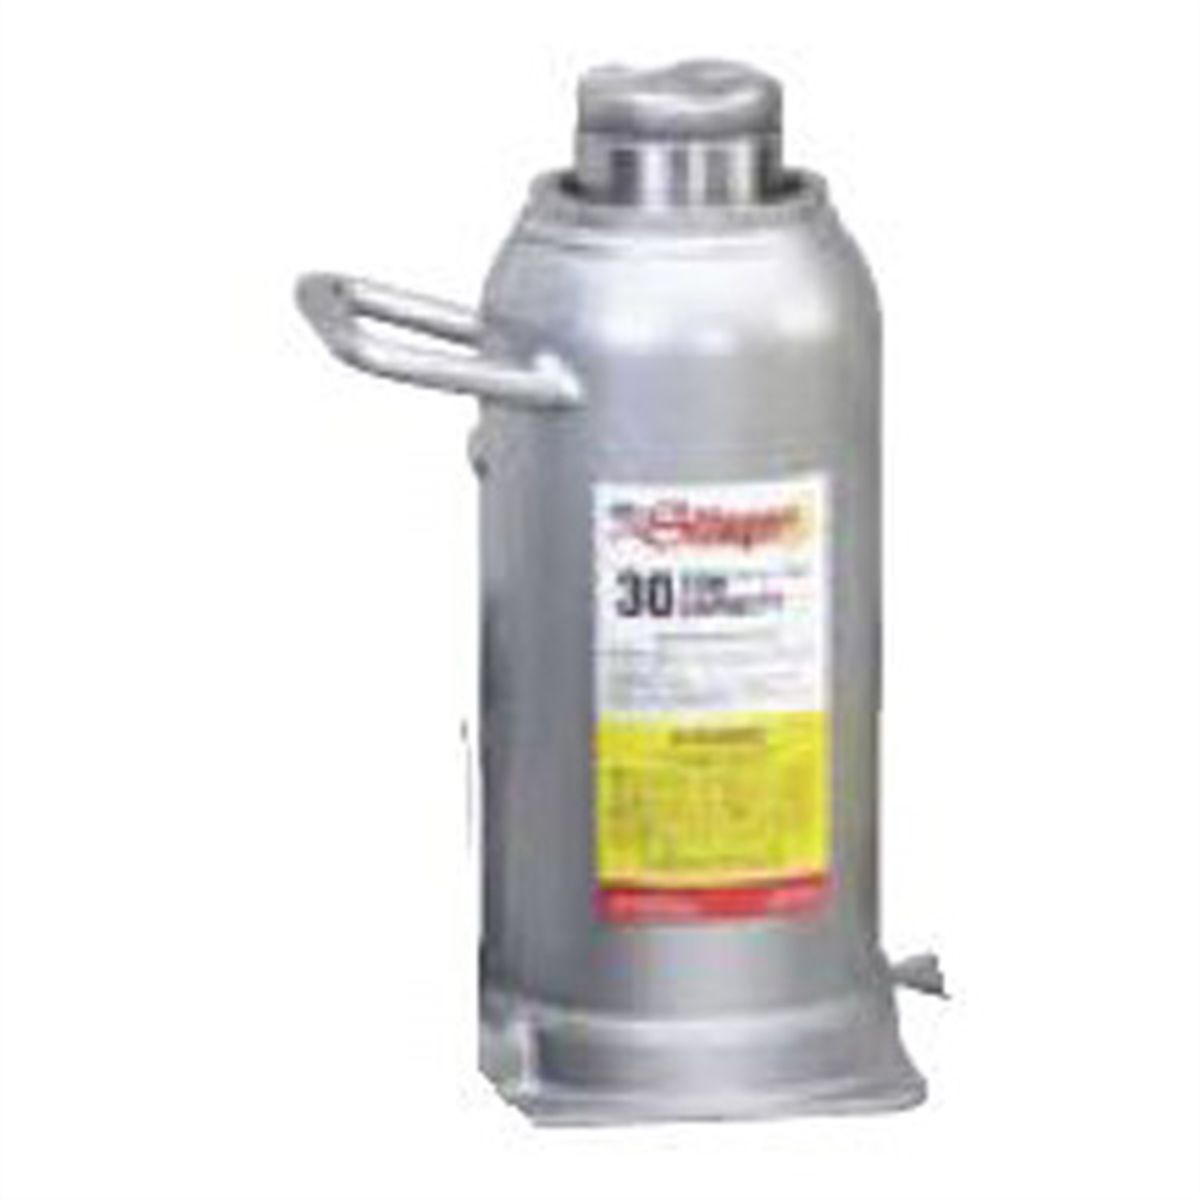 Hydraulic Bottle Jack - 50 Ton - 6.75 In. Stroke